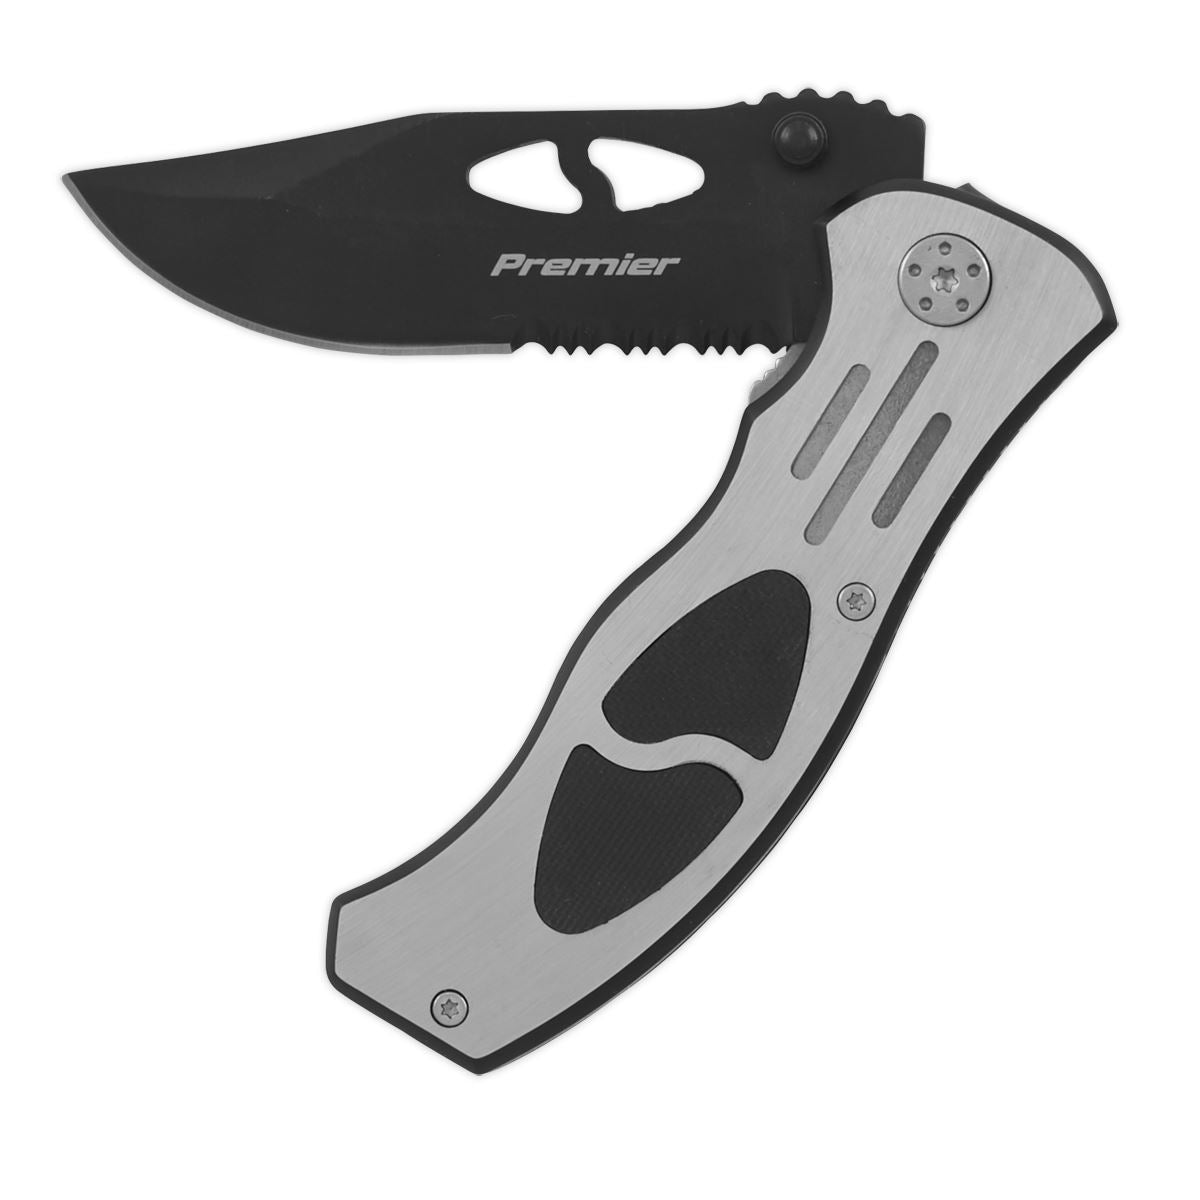 Sealey Premier Pocket Knife Locking Large